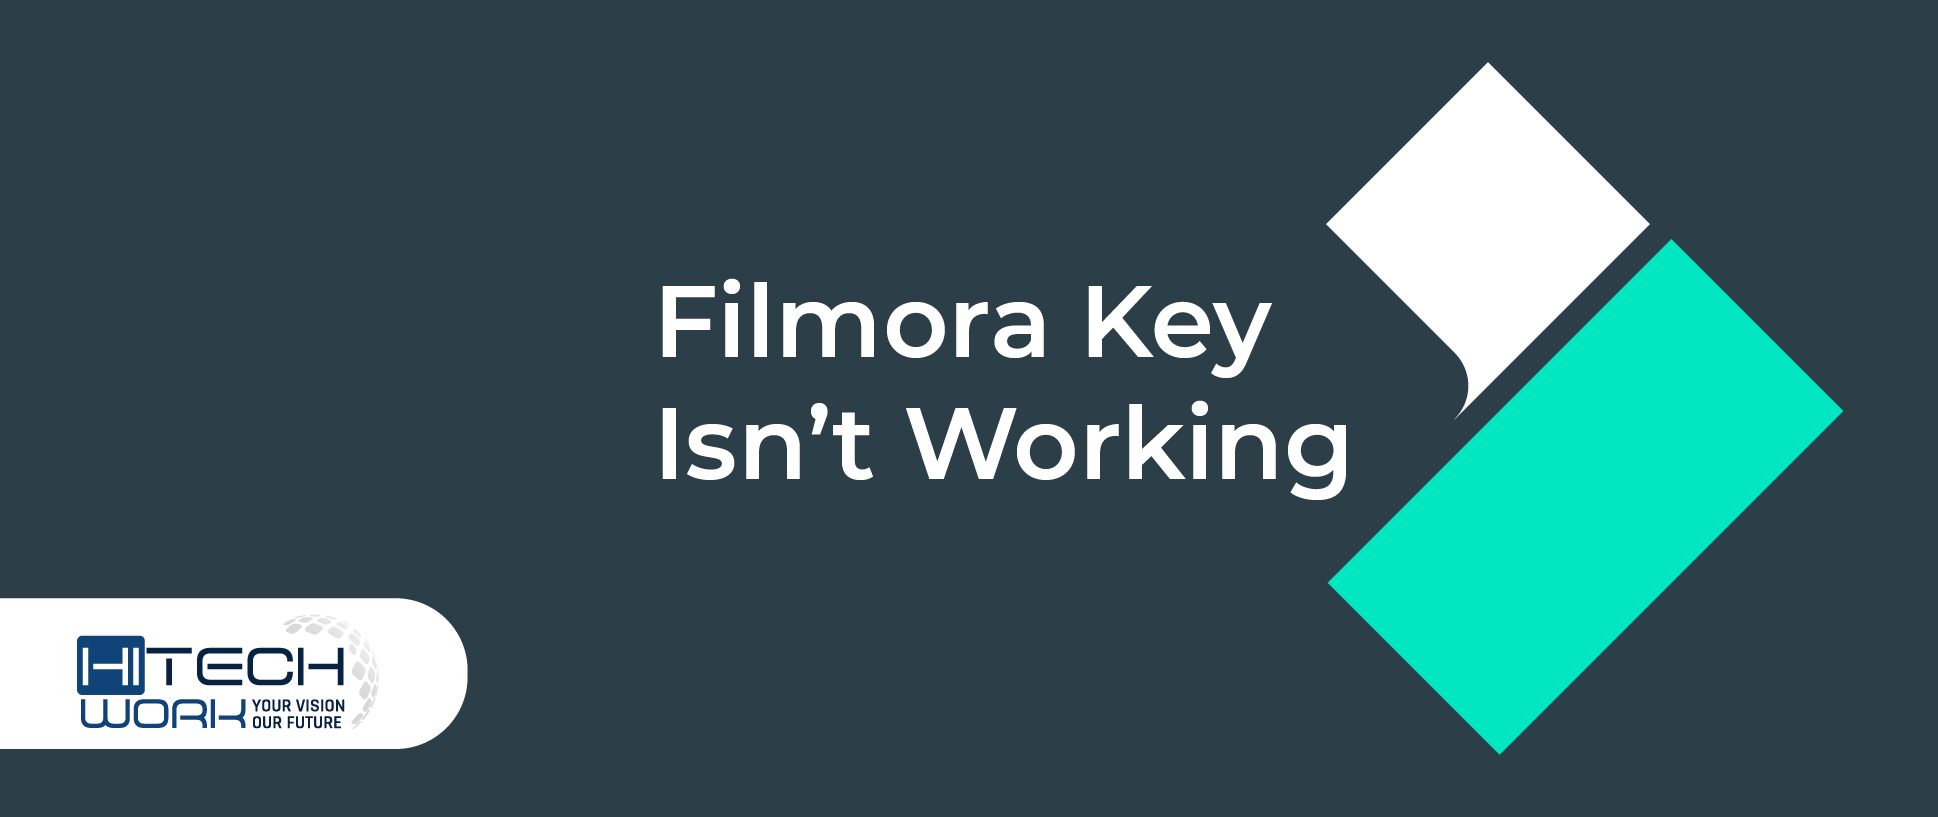 Filmora Key Isn't Working